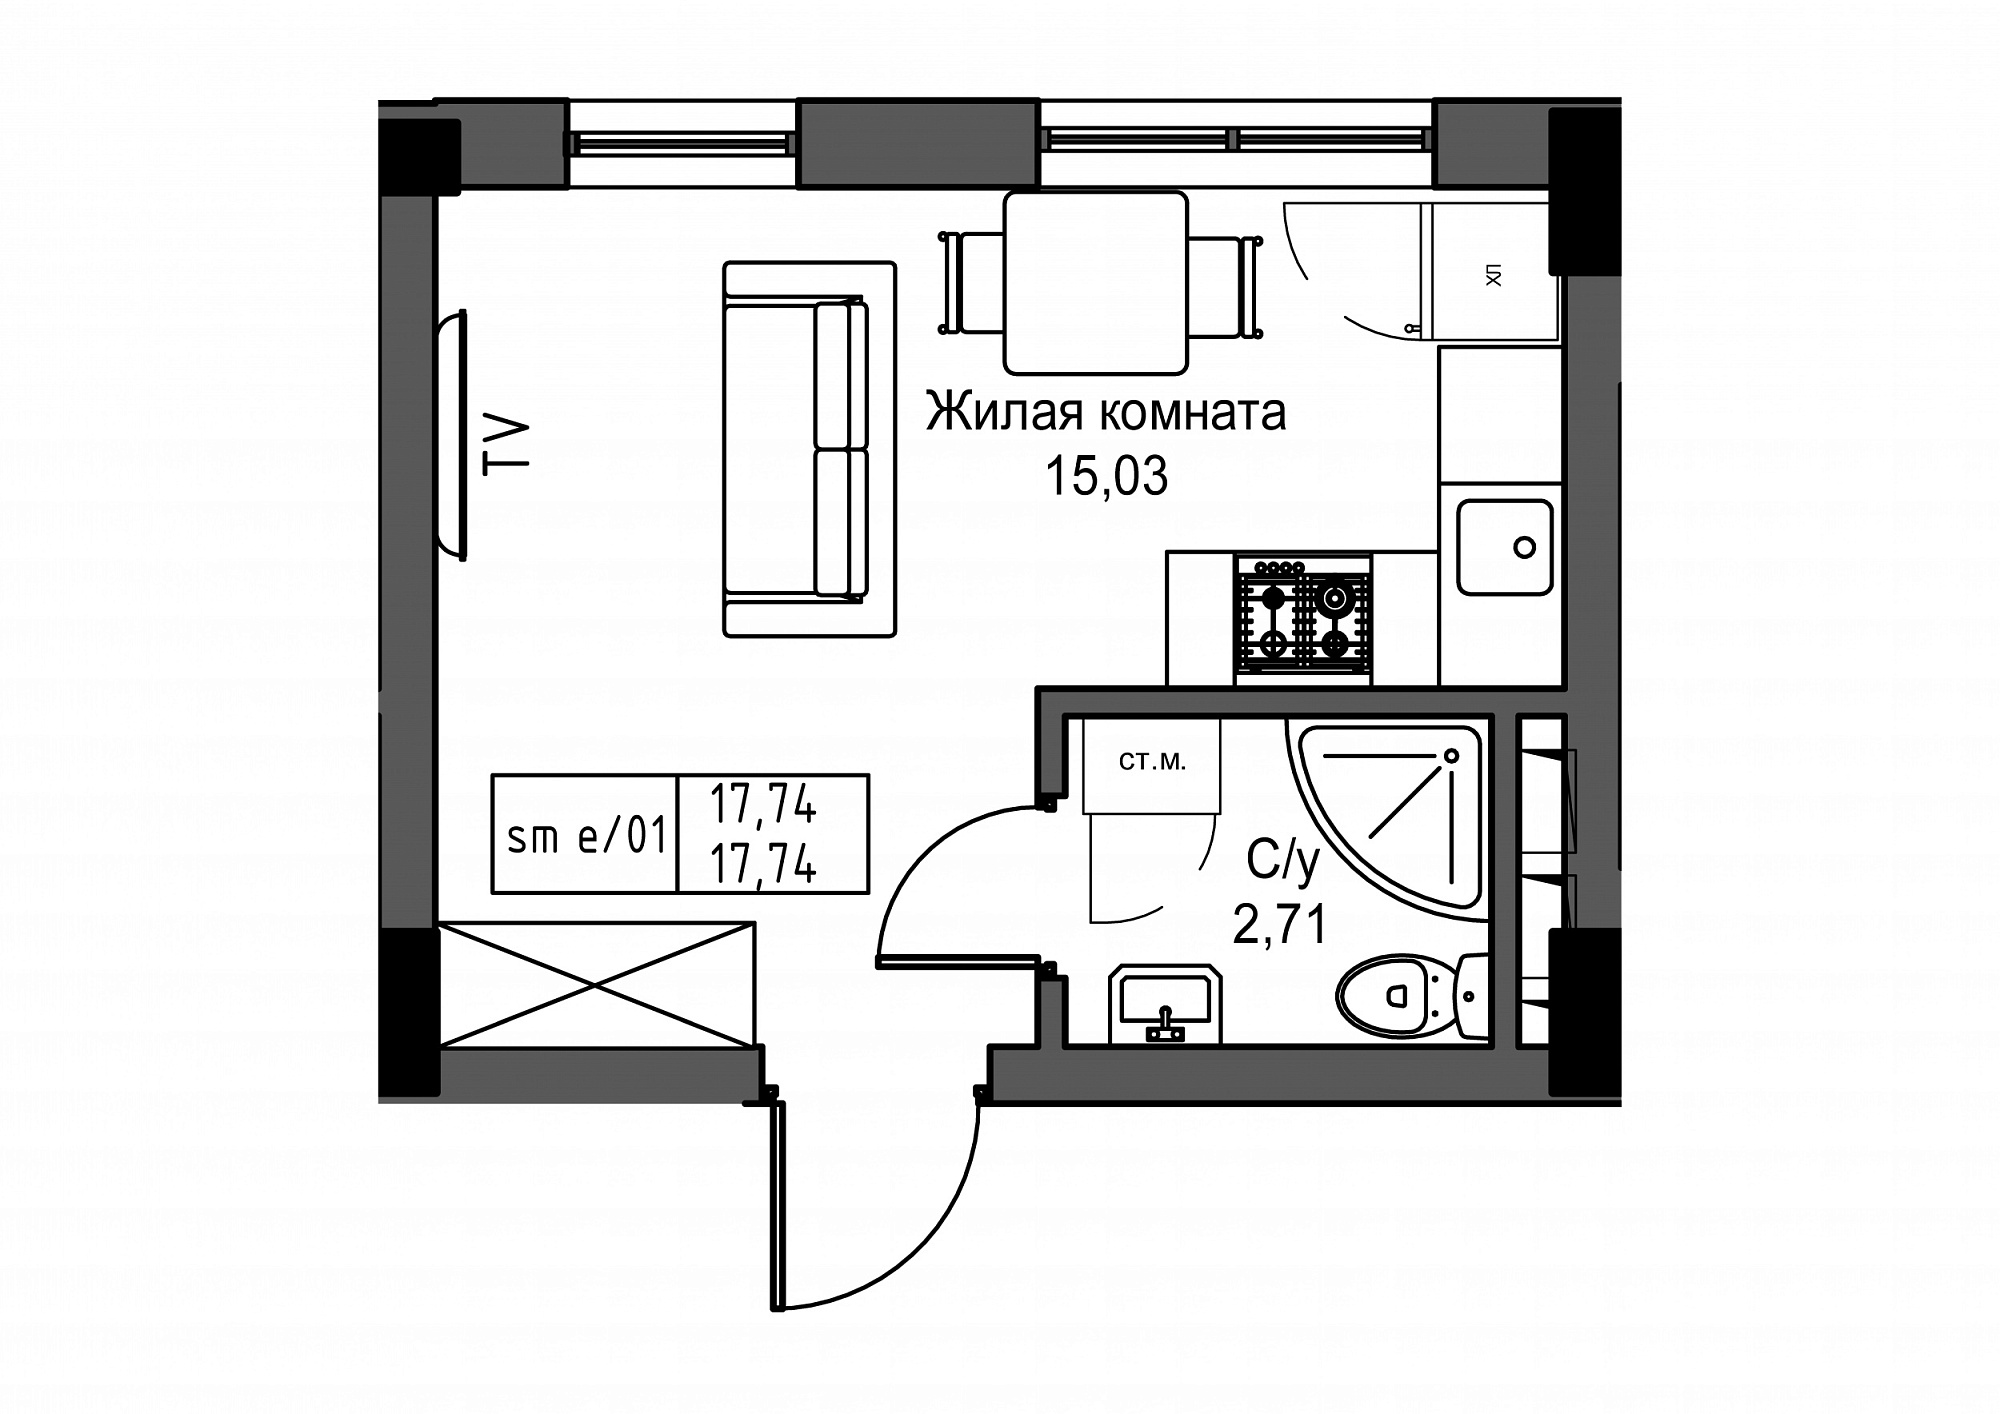 Планировка Smart-квартира площей 17.74м2, UM-003-02/0015.